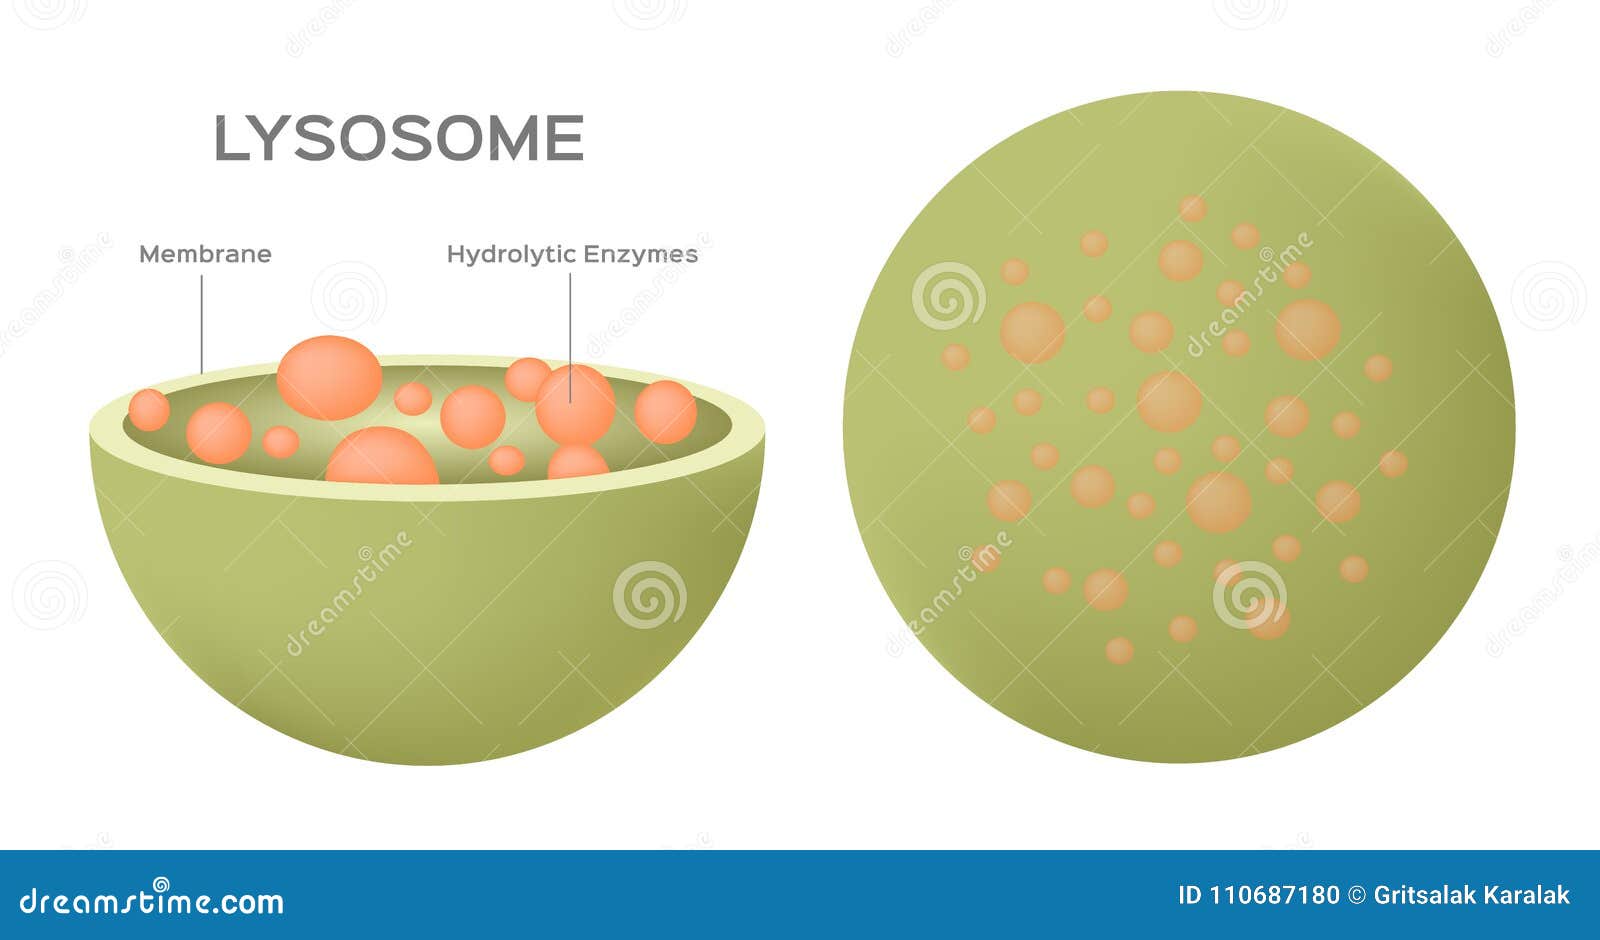 Лизосомы отсутствуют в клетках. Lysosome. Задания по теме лизосома рисунки. Лизосомы рисунок легкий.